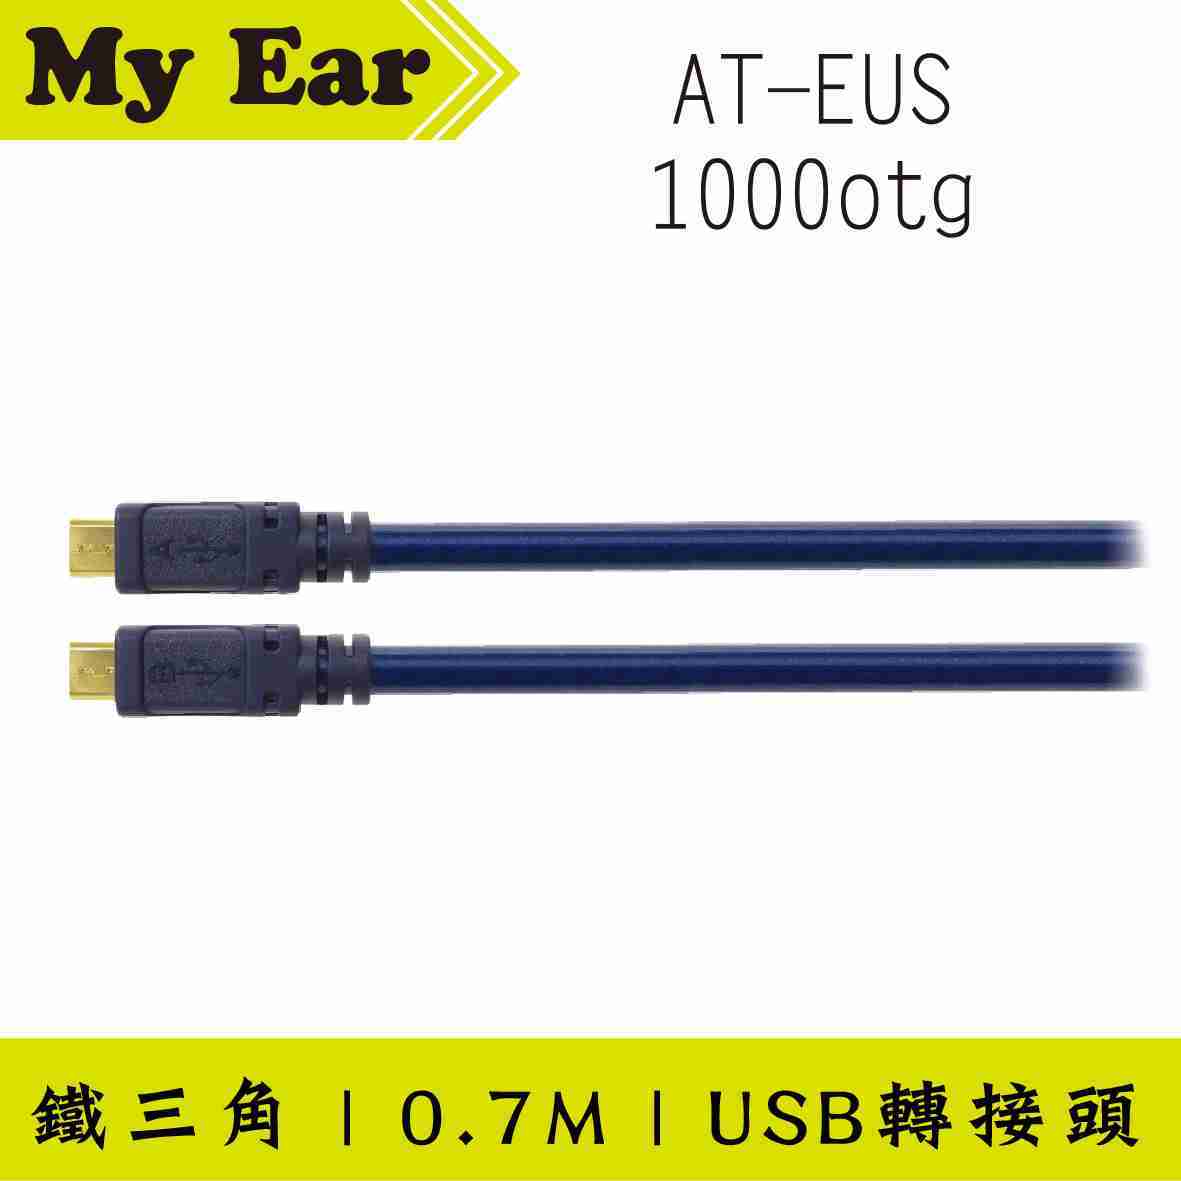 鐵三角 AT-EUS1000otg 0.7M 鍍金接頭 OFC USB 轉接線 | My Ear 耳機專門店